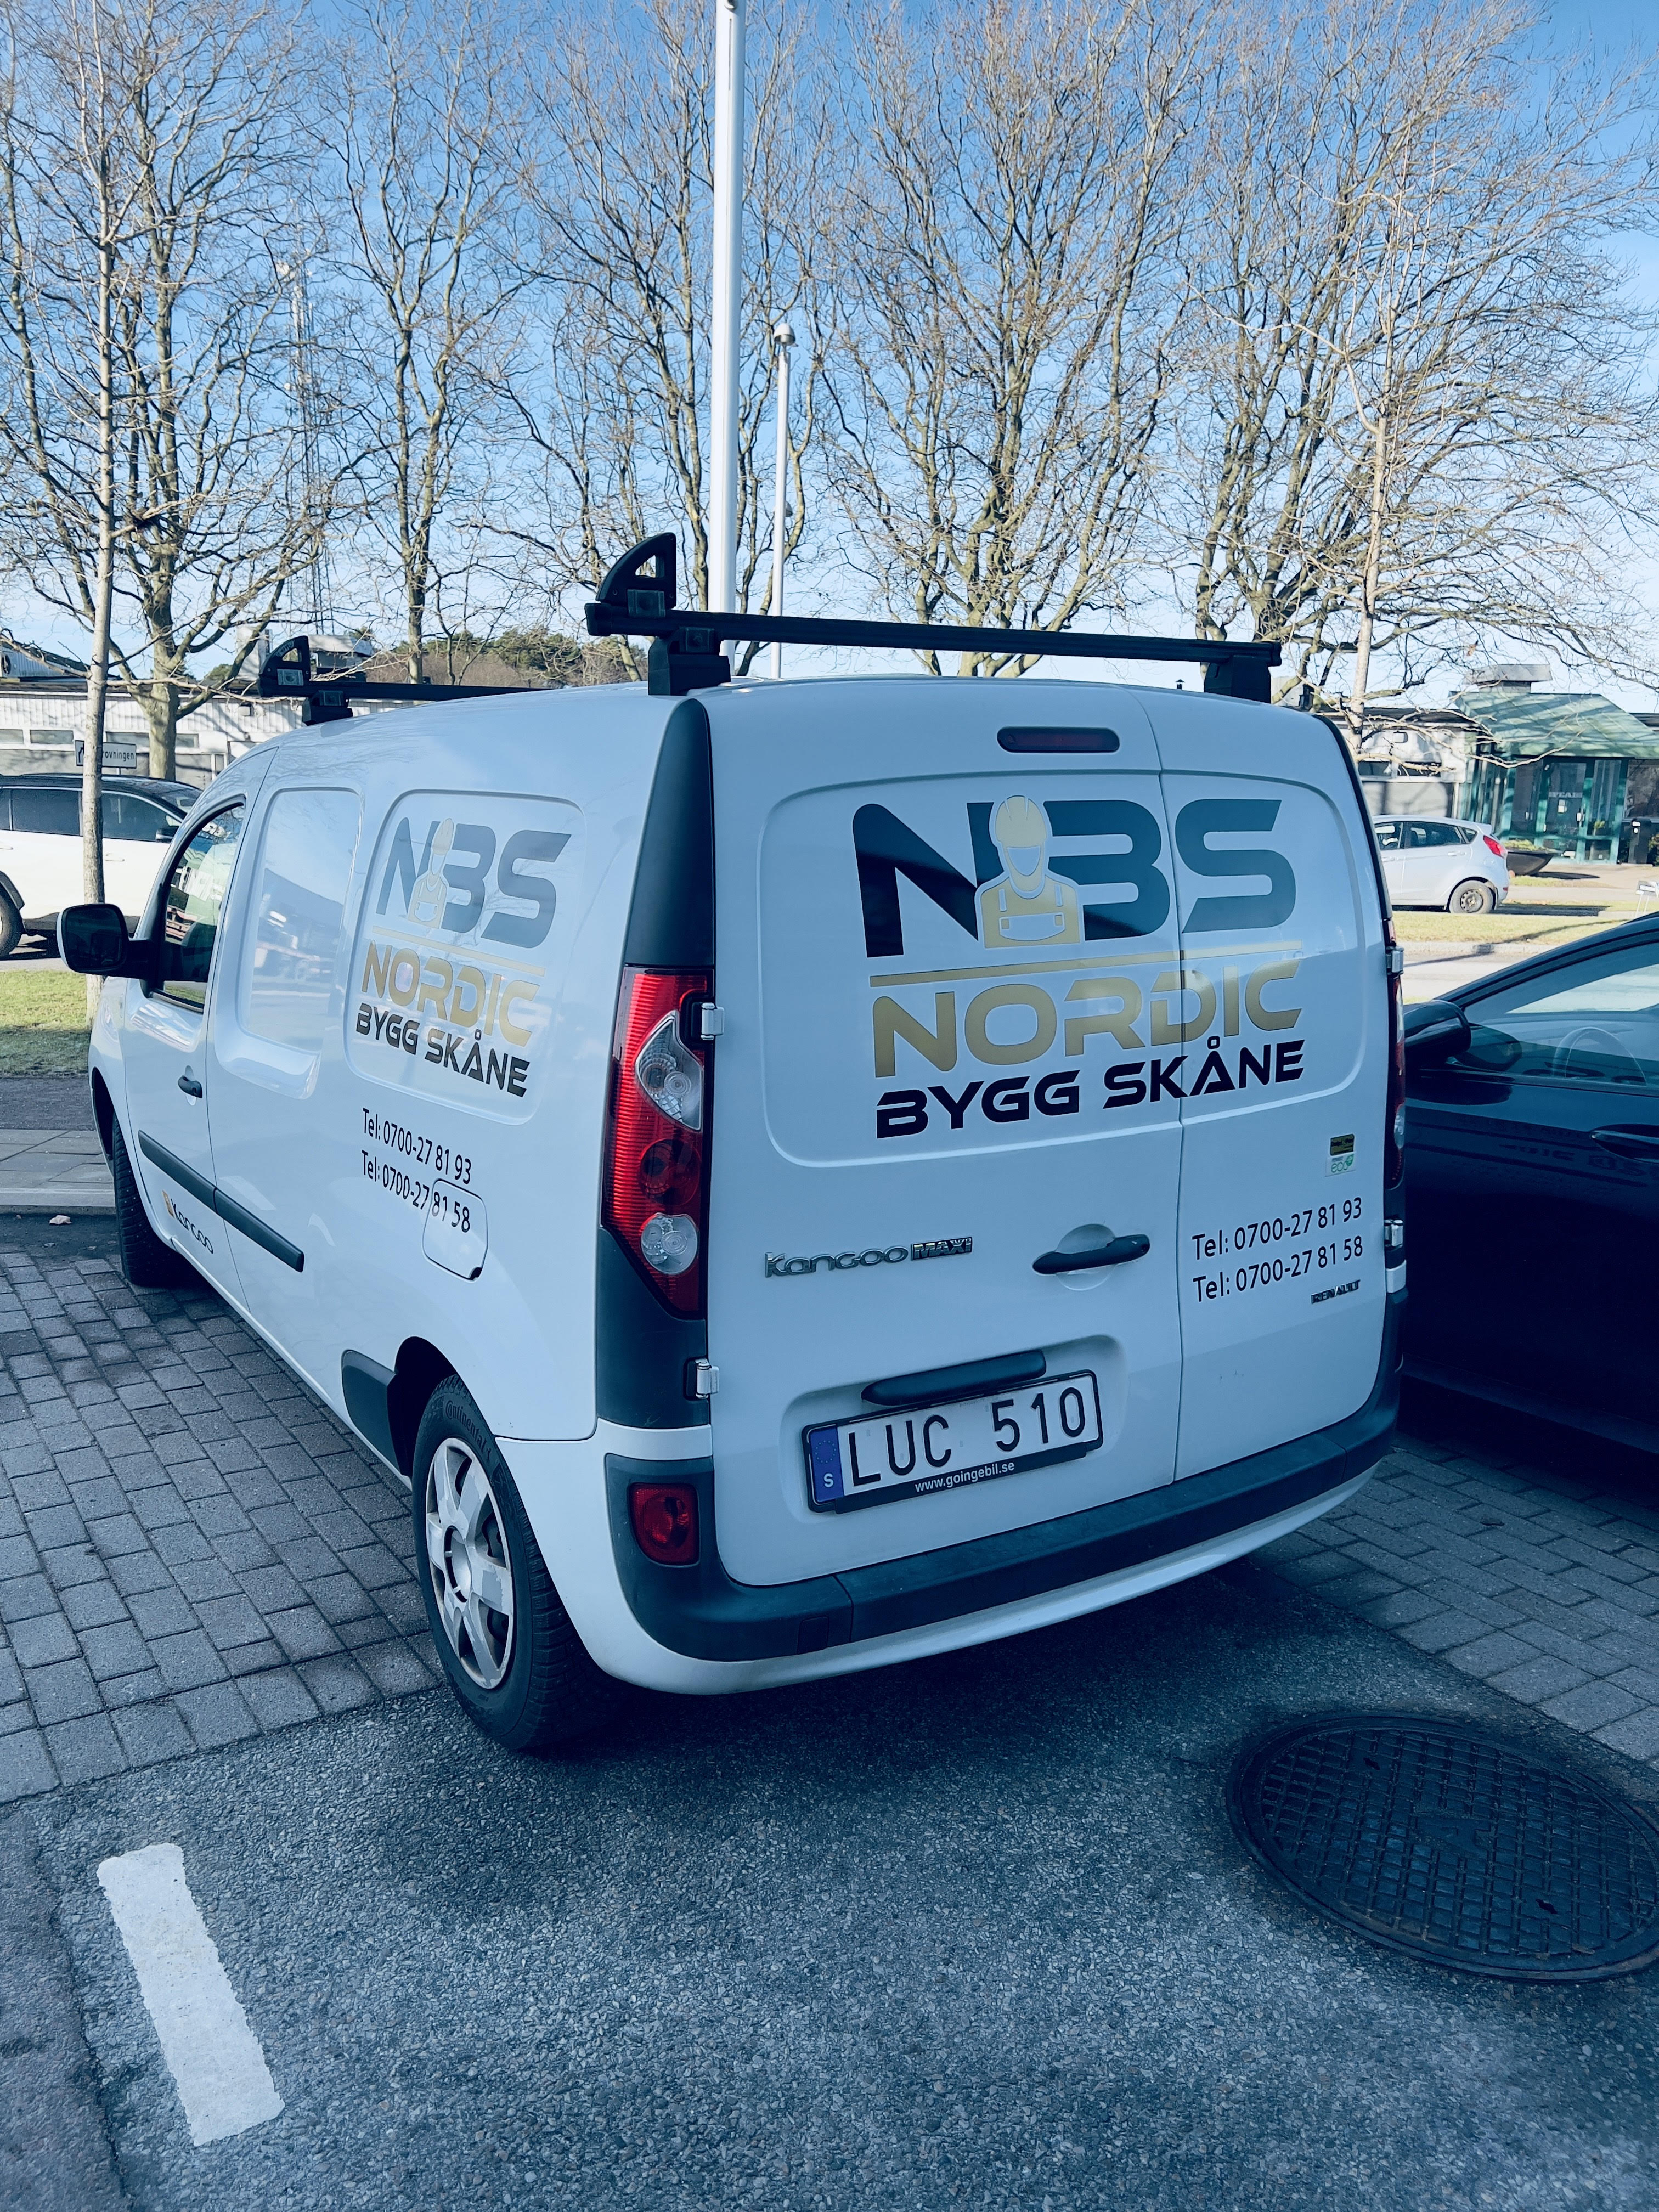 NBS Nordic Bygg Skåne